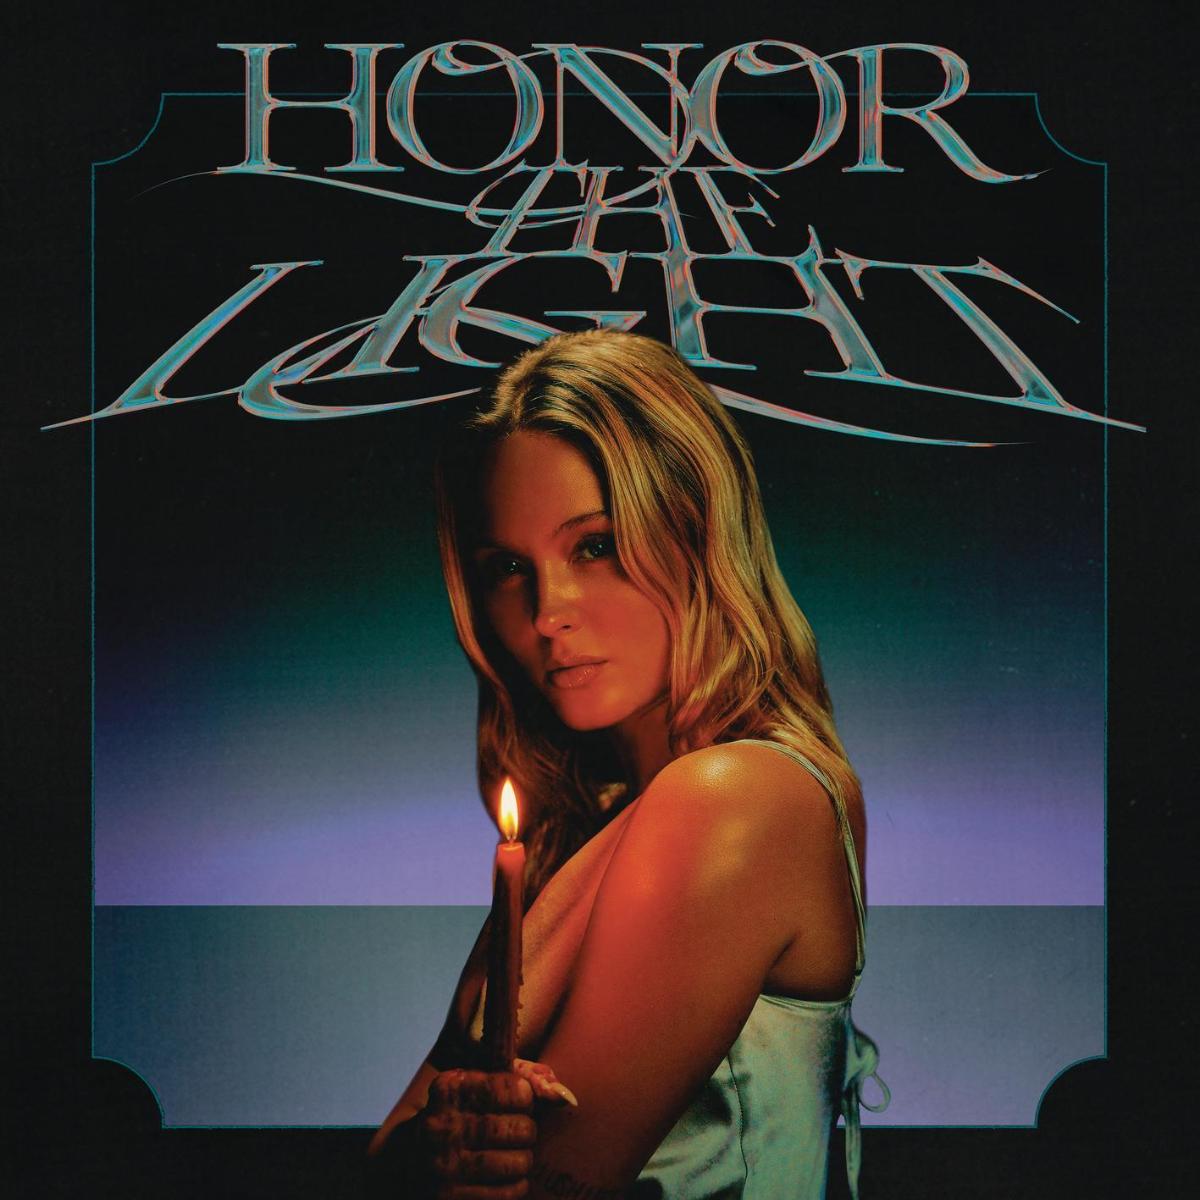 Das Albumcover "Honor The Light" von Zara Larsson zeigt die Musikerin im Porträt mit einer Kerze in der Hand.